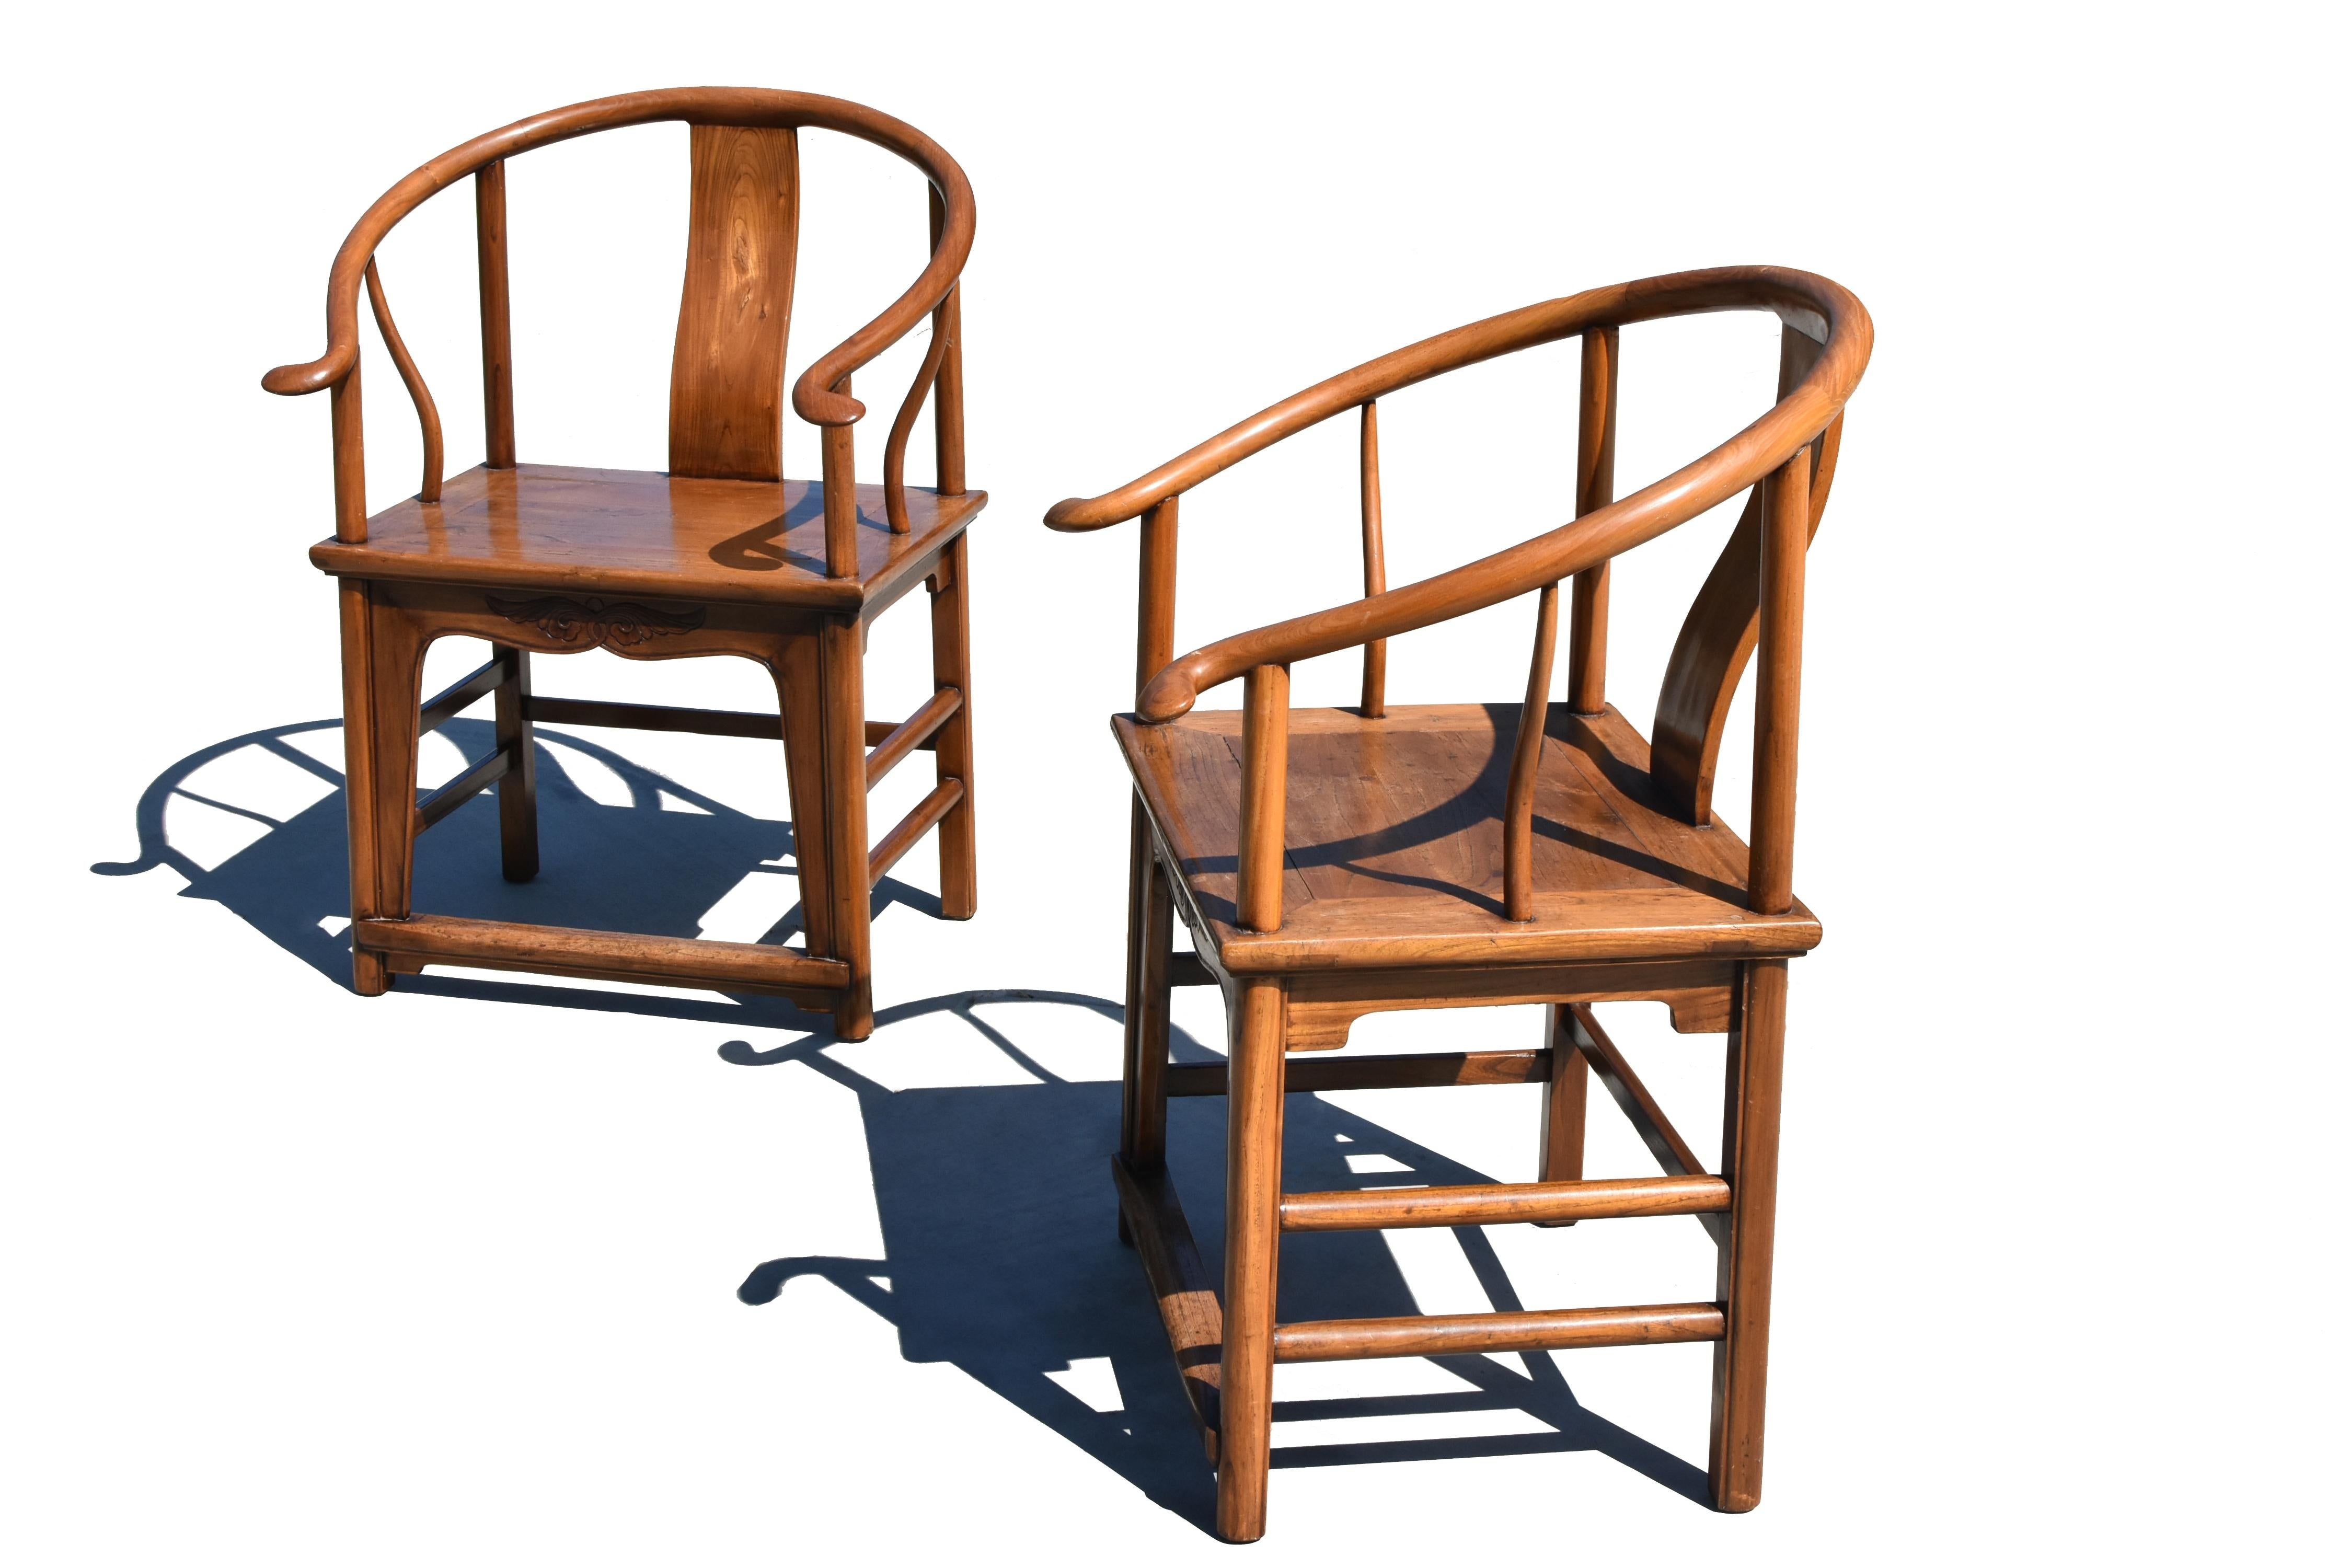 Paire de très grandes chaises en fer à cheval chinoises du 19e siècle, en bois vendu. La rampe de crête arrondie, solide et continue, d'une épaisseur de 2 pouces, est composée de trois sections incurvées. Les extrémités des bras dépassent les